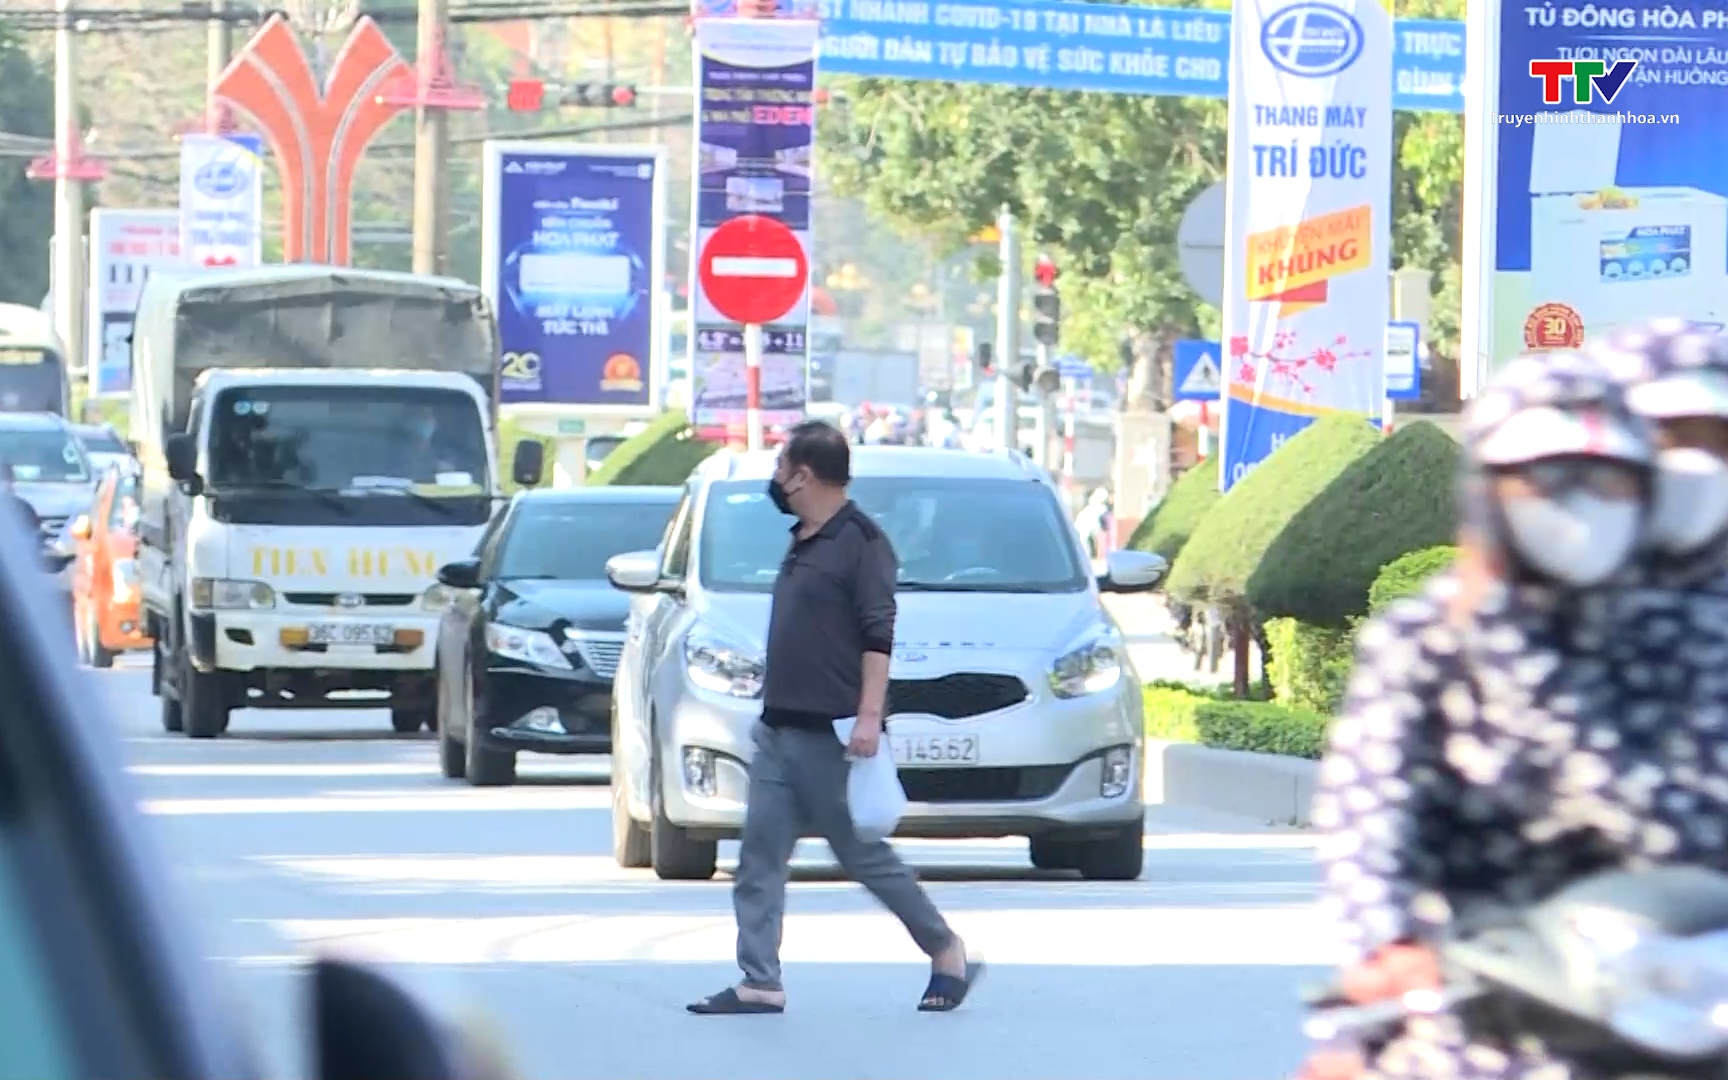 Cần xử lý nghiêm người đi bộ vi phạm quy định khi tham gia giao thông